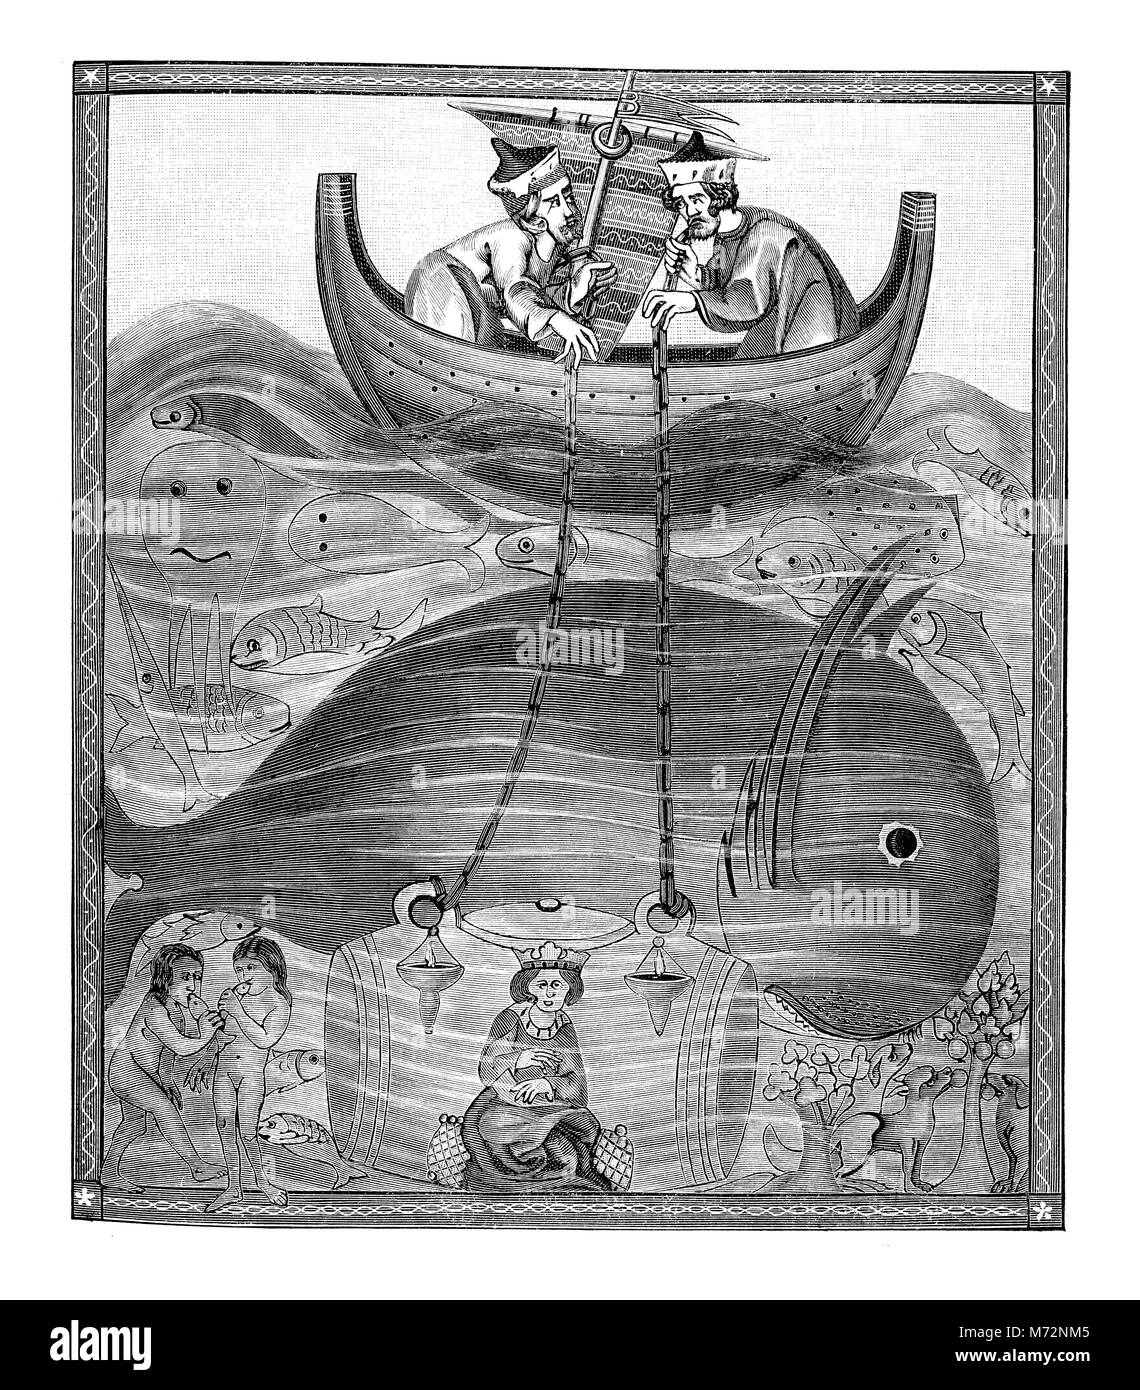 Médiéval fantastique représentation des eaux de profondeur de la mer, avec les baleines et les fonds sous-marins, XII siècle illustration Banque D'Images